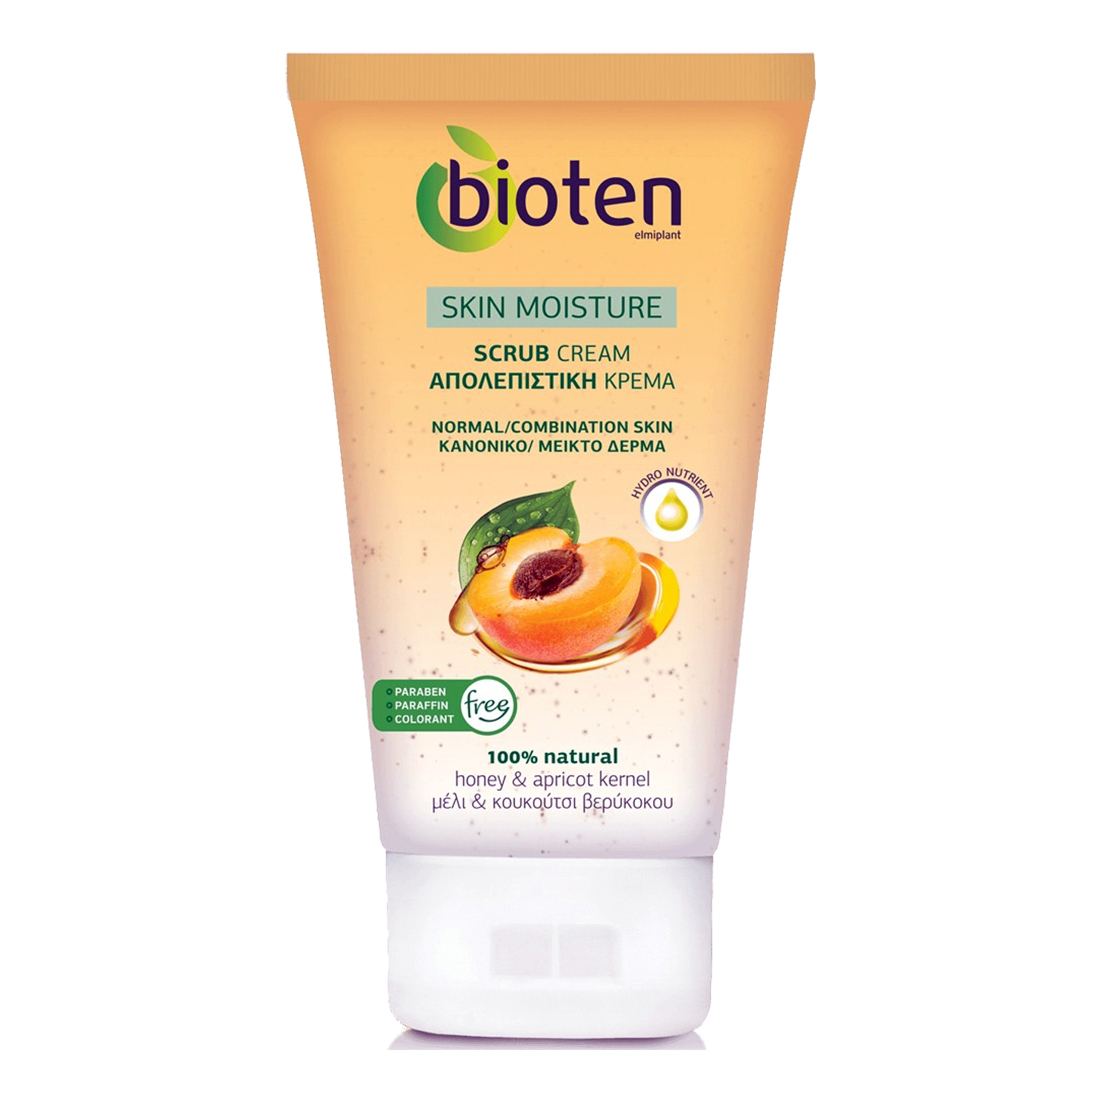 Bioten Skin Moisture Scrub Cream 100% Natural Honey & Apricot Kernel 150ml - $13.80